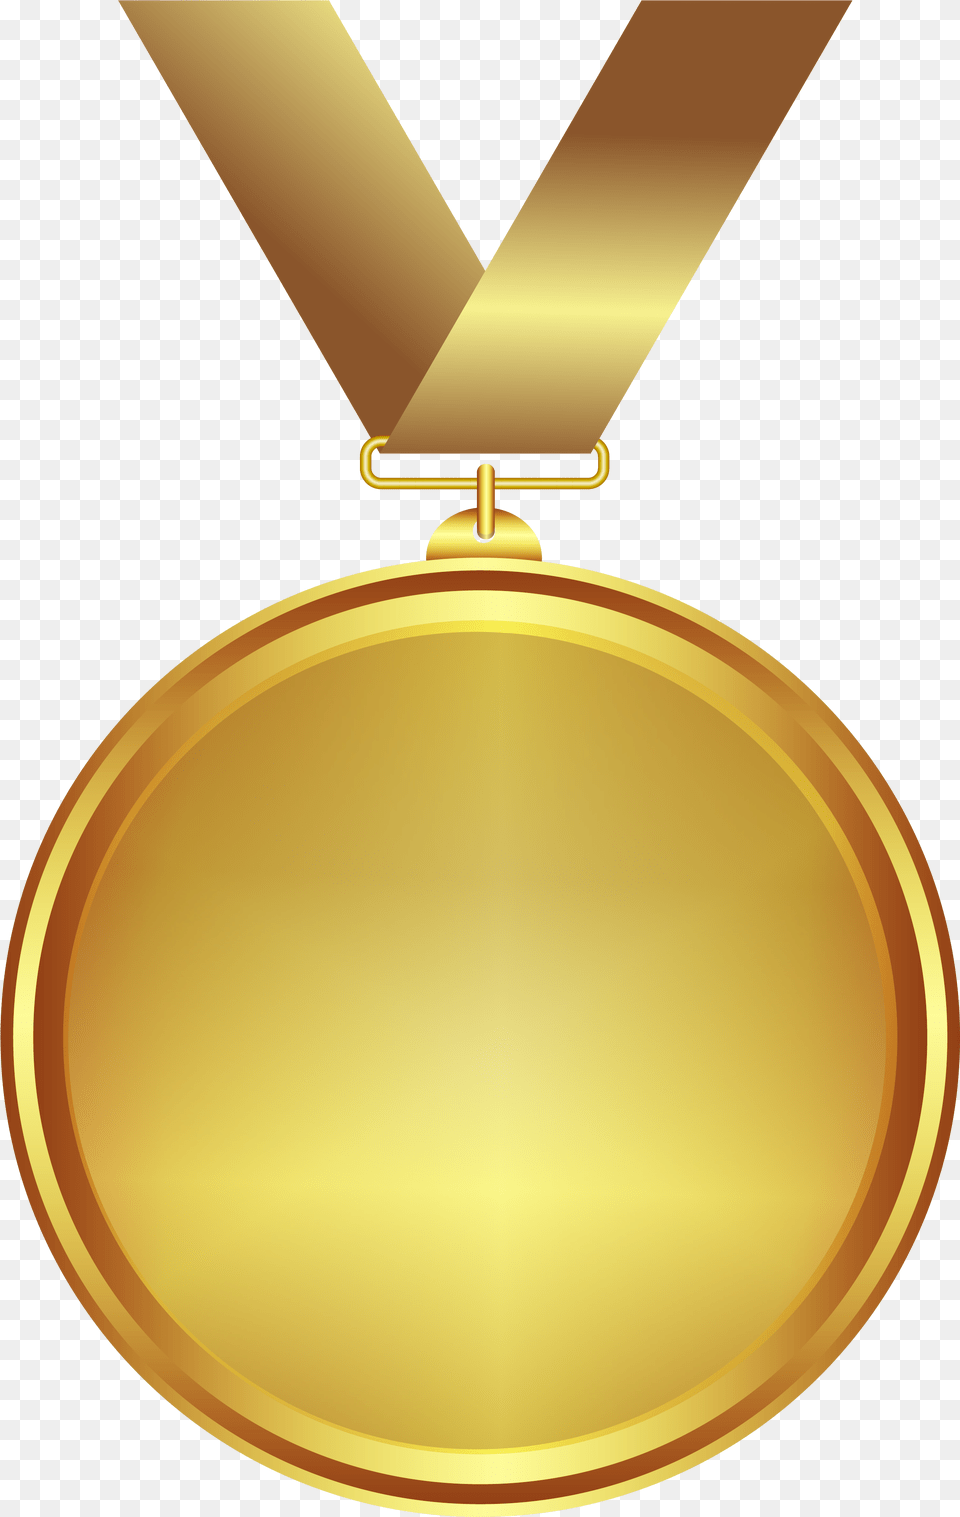 Gold Medal, Gold Medal, Trophy, Disk Free Transparent Png